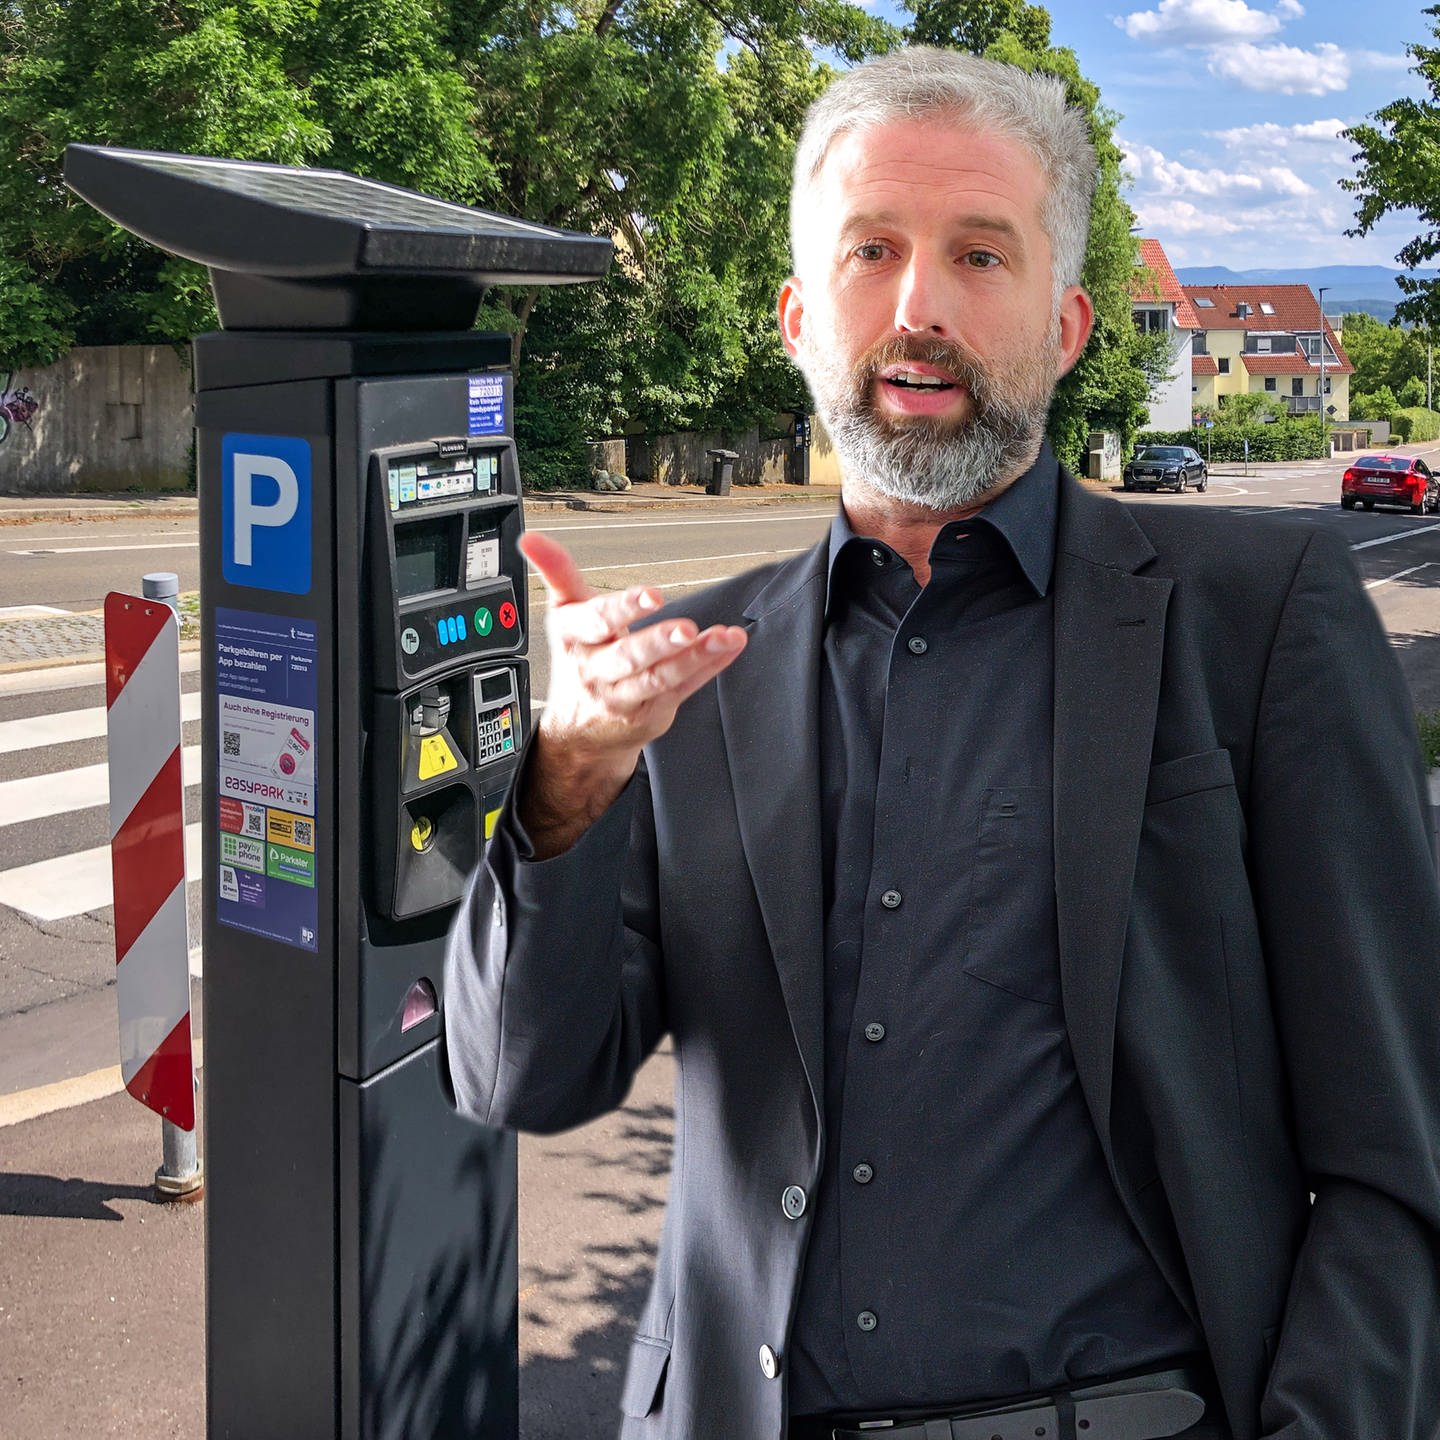 Parkgebühren per Handy zahlen spart Geld - sagt Boris Palmer - SWR